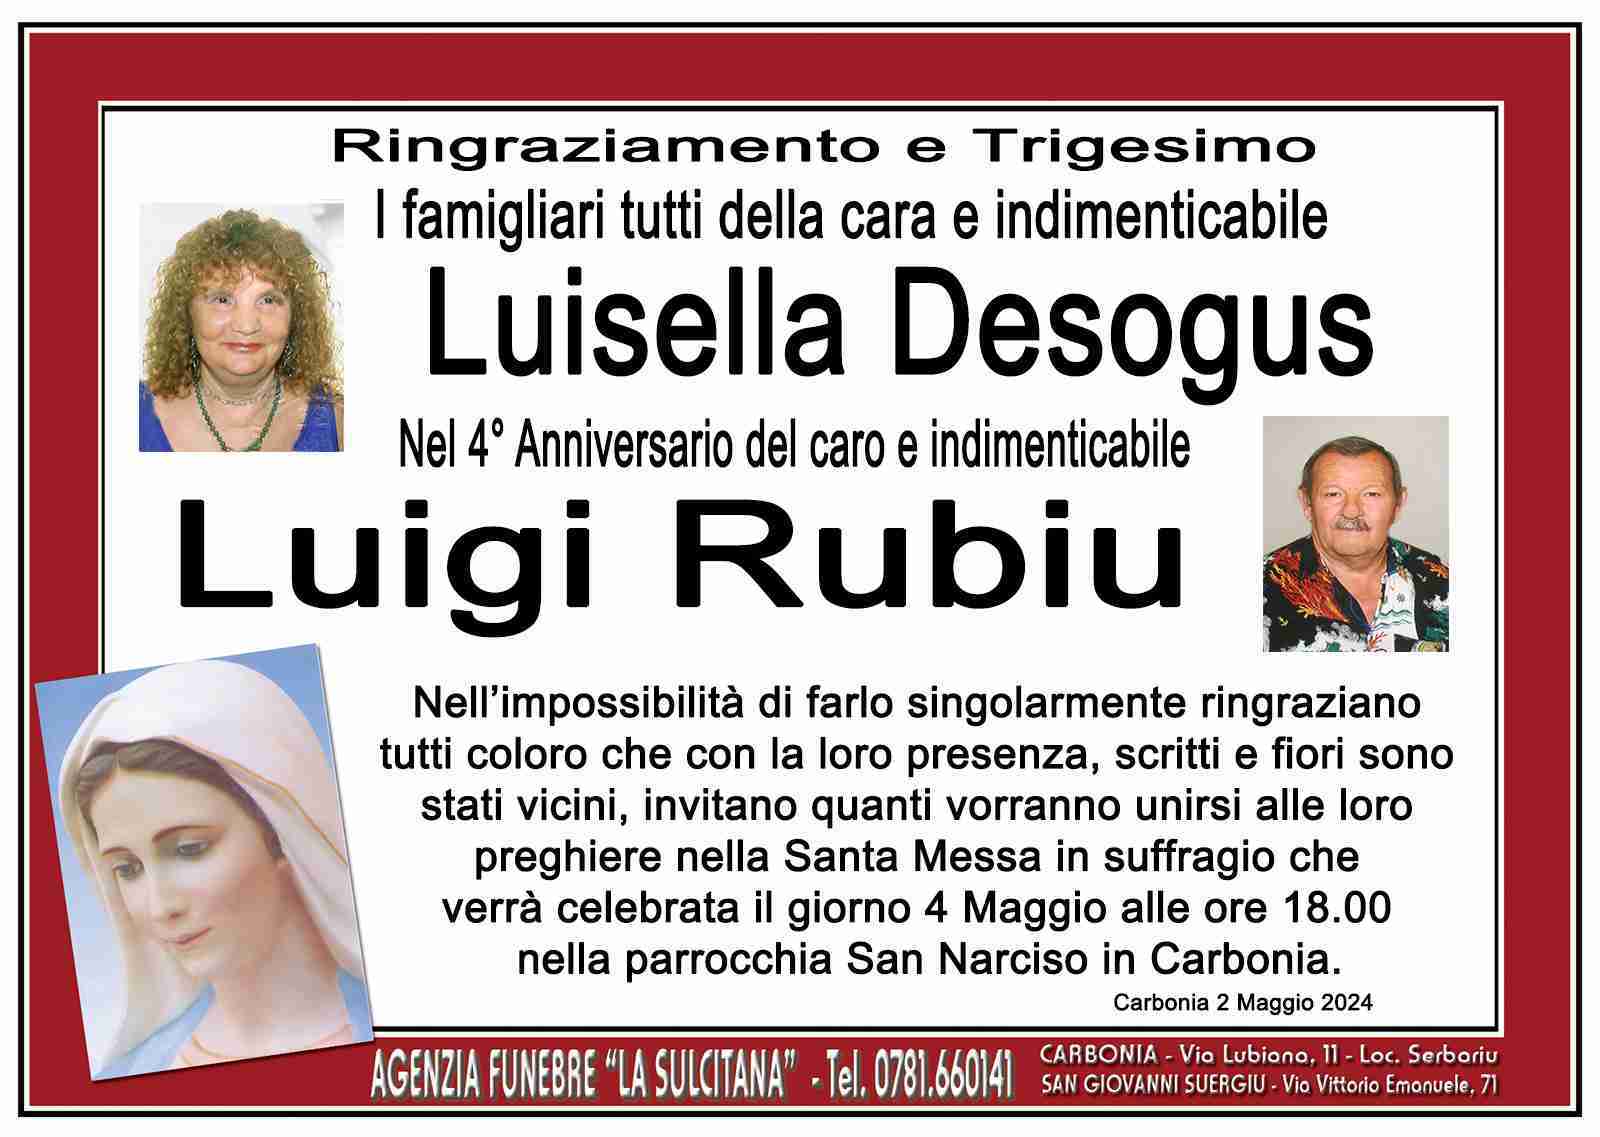 Luisella Desogus